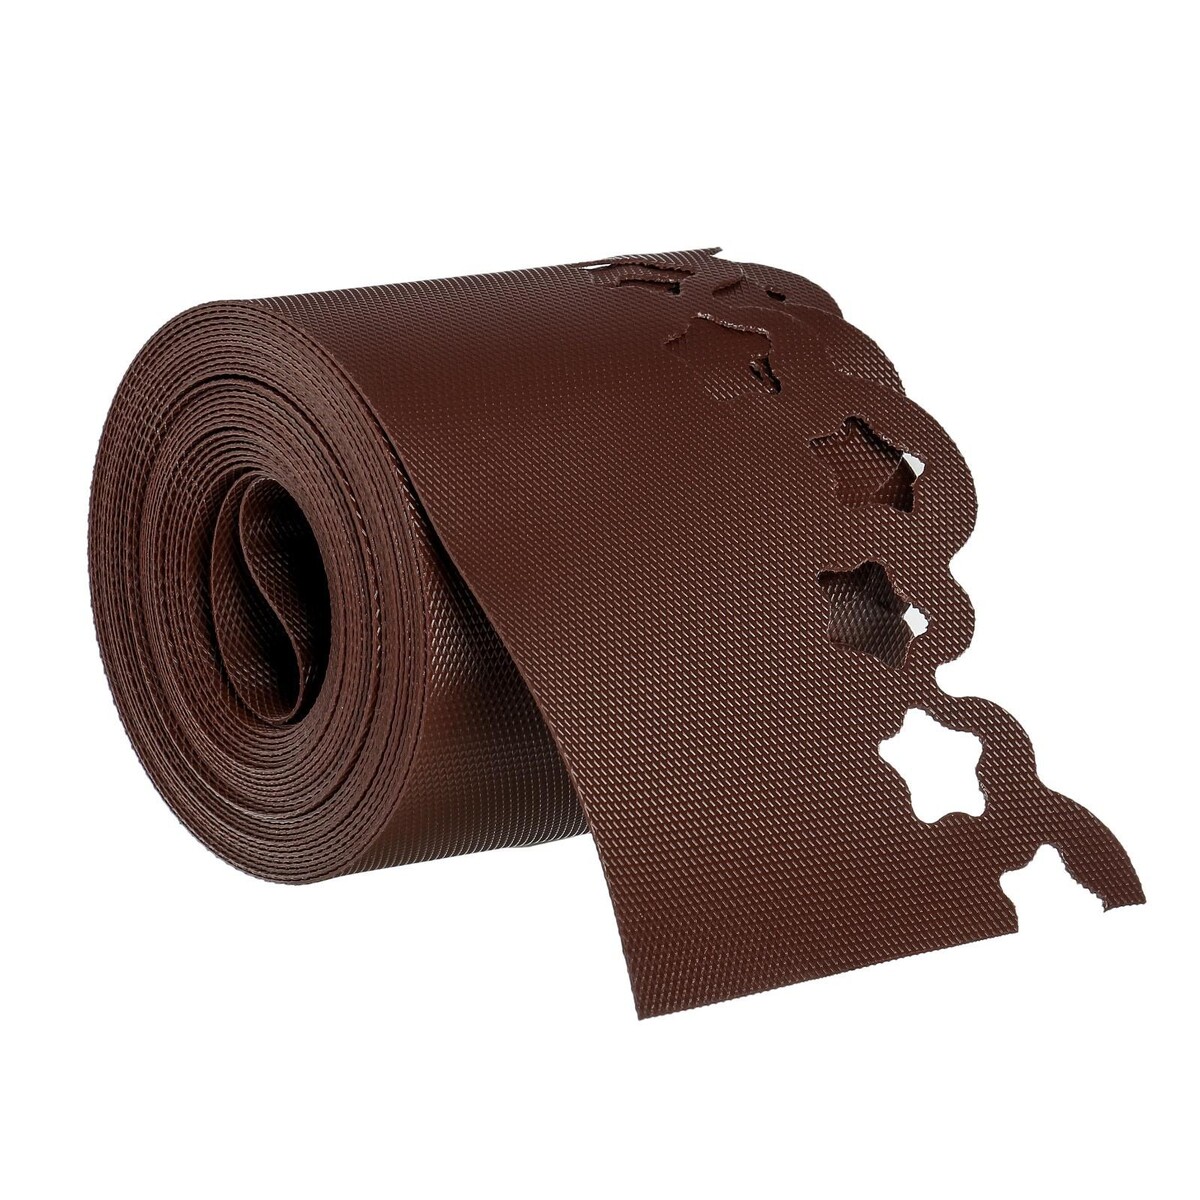 Лента бордюрная, 0.15 × 9 м, толщина 1.2 мм, пластиковая, фигурная, коричневая, greengo лента бордюрная 0 15 × 9 м толщина 0 6 мм пластиковая гофра темно коричневая